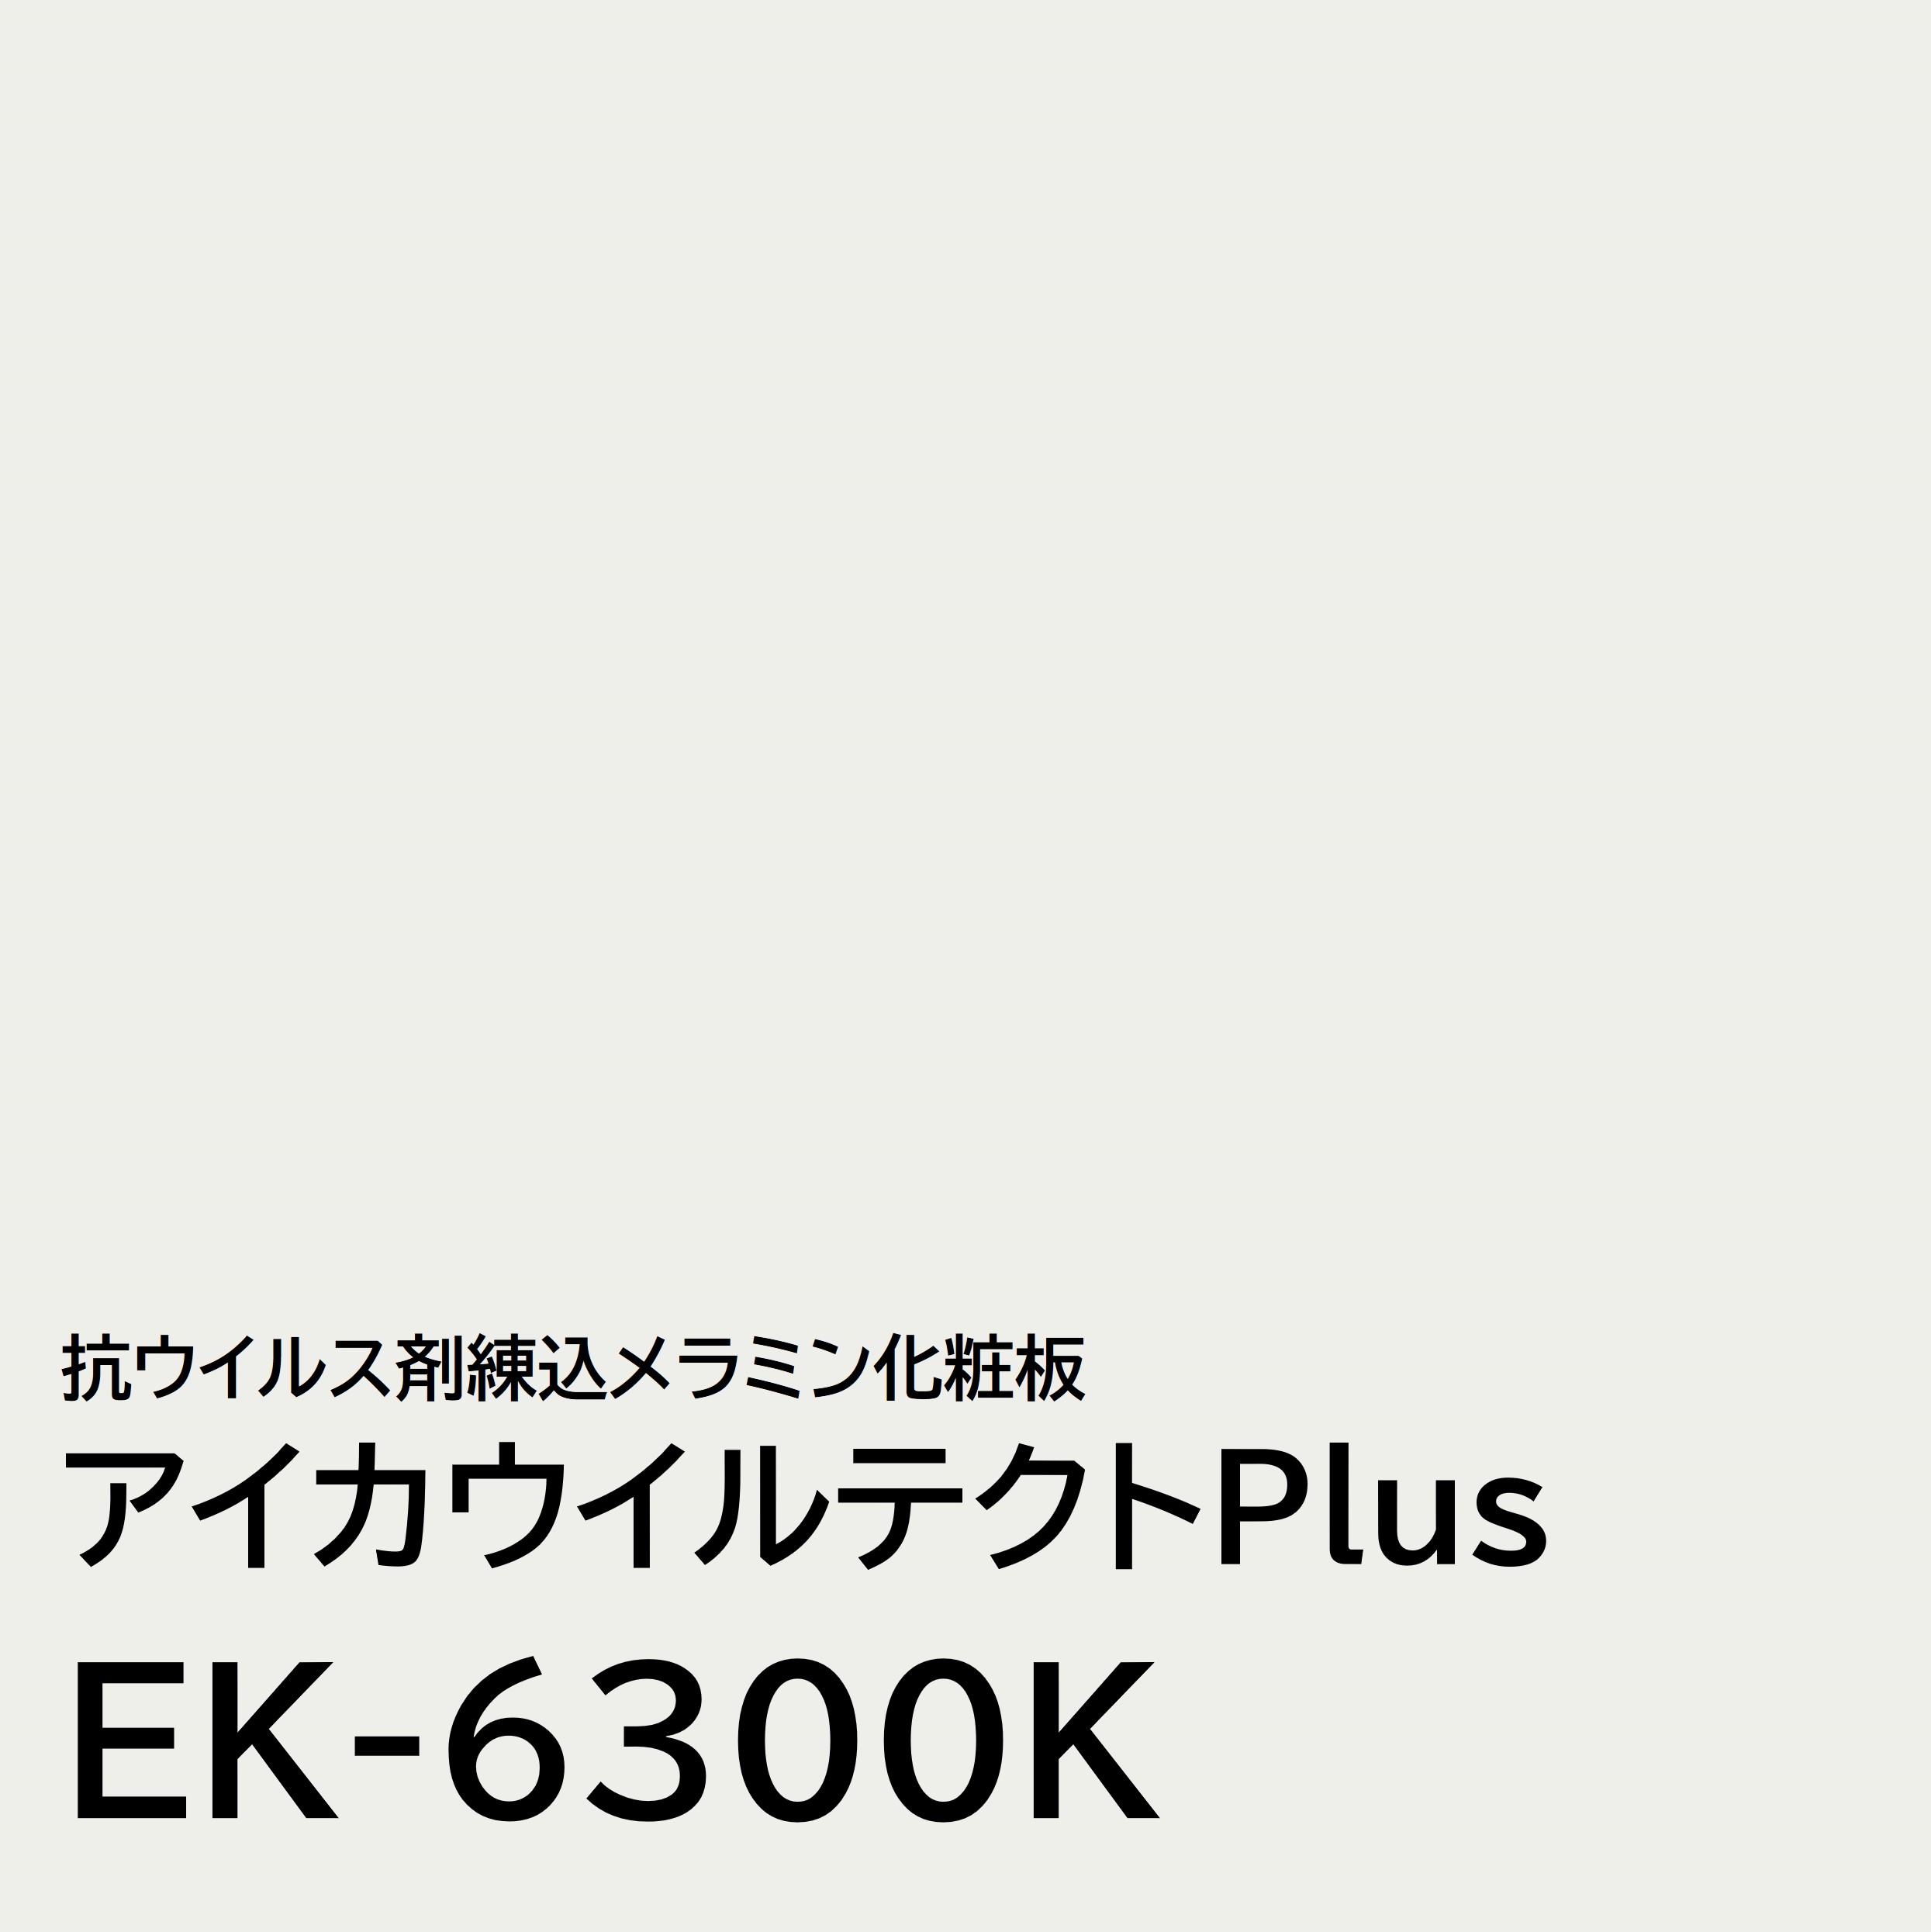 ECeNgPlus EK-6300K 4~8 0.95mm 1230~2450mm RECXܗ~ϔ RECX R L PF